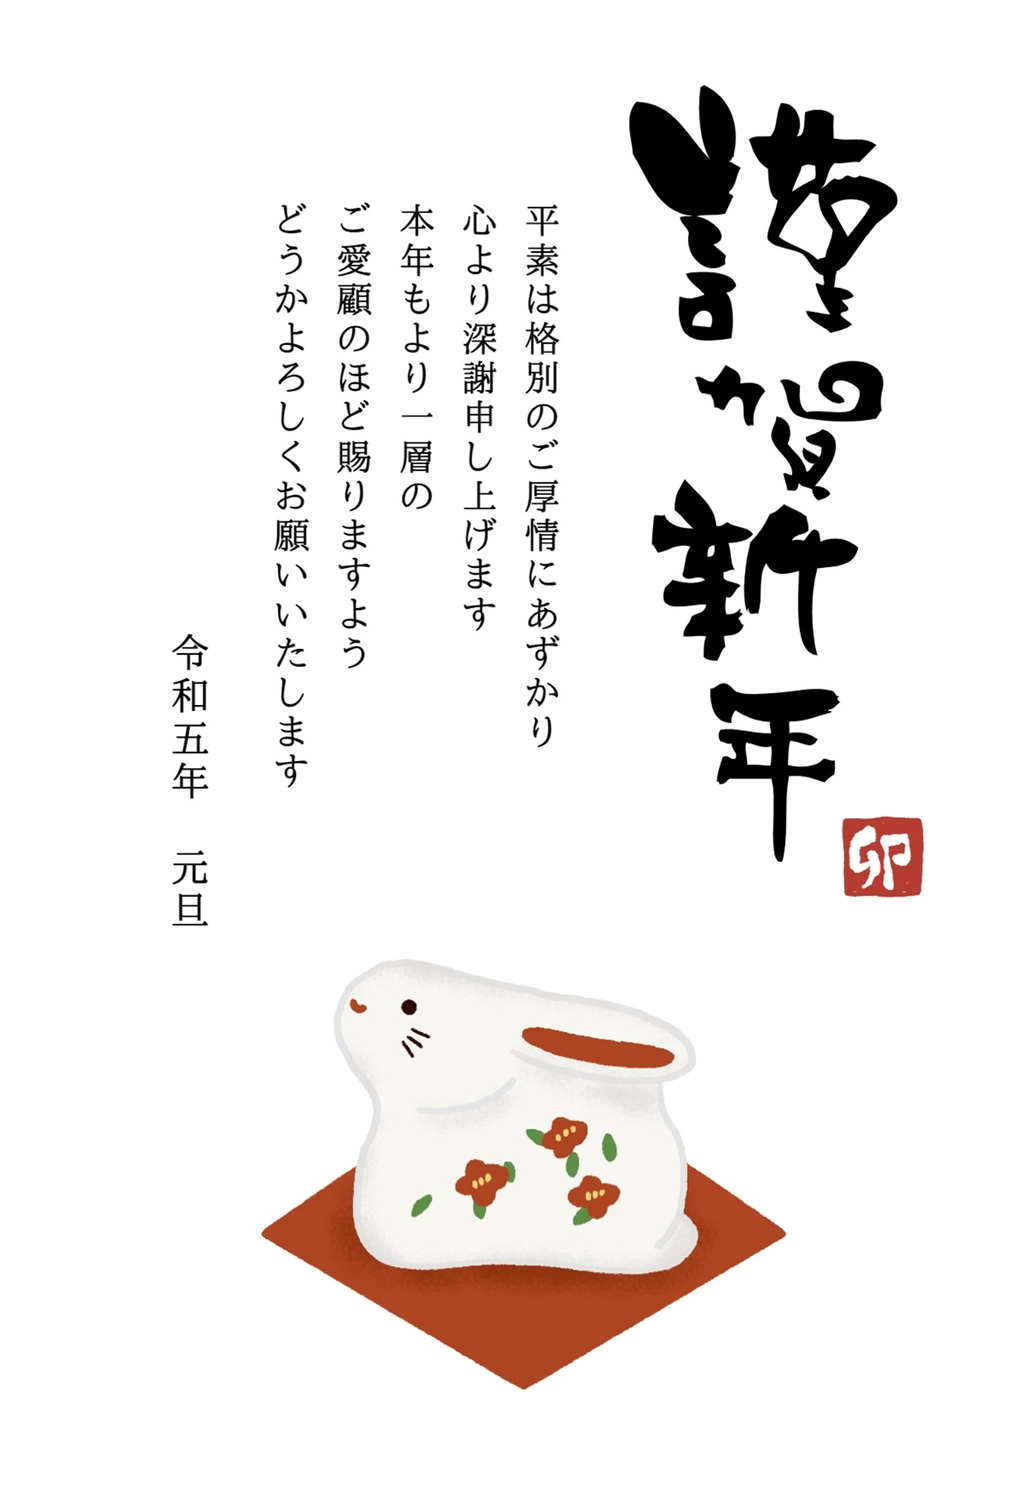 年賀状　卯の置物, ornament, Oriental zodiac sign, sign and seal, New Year Card template